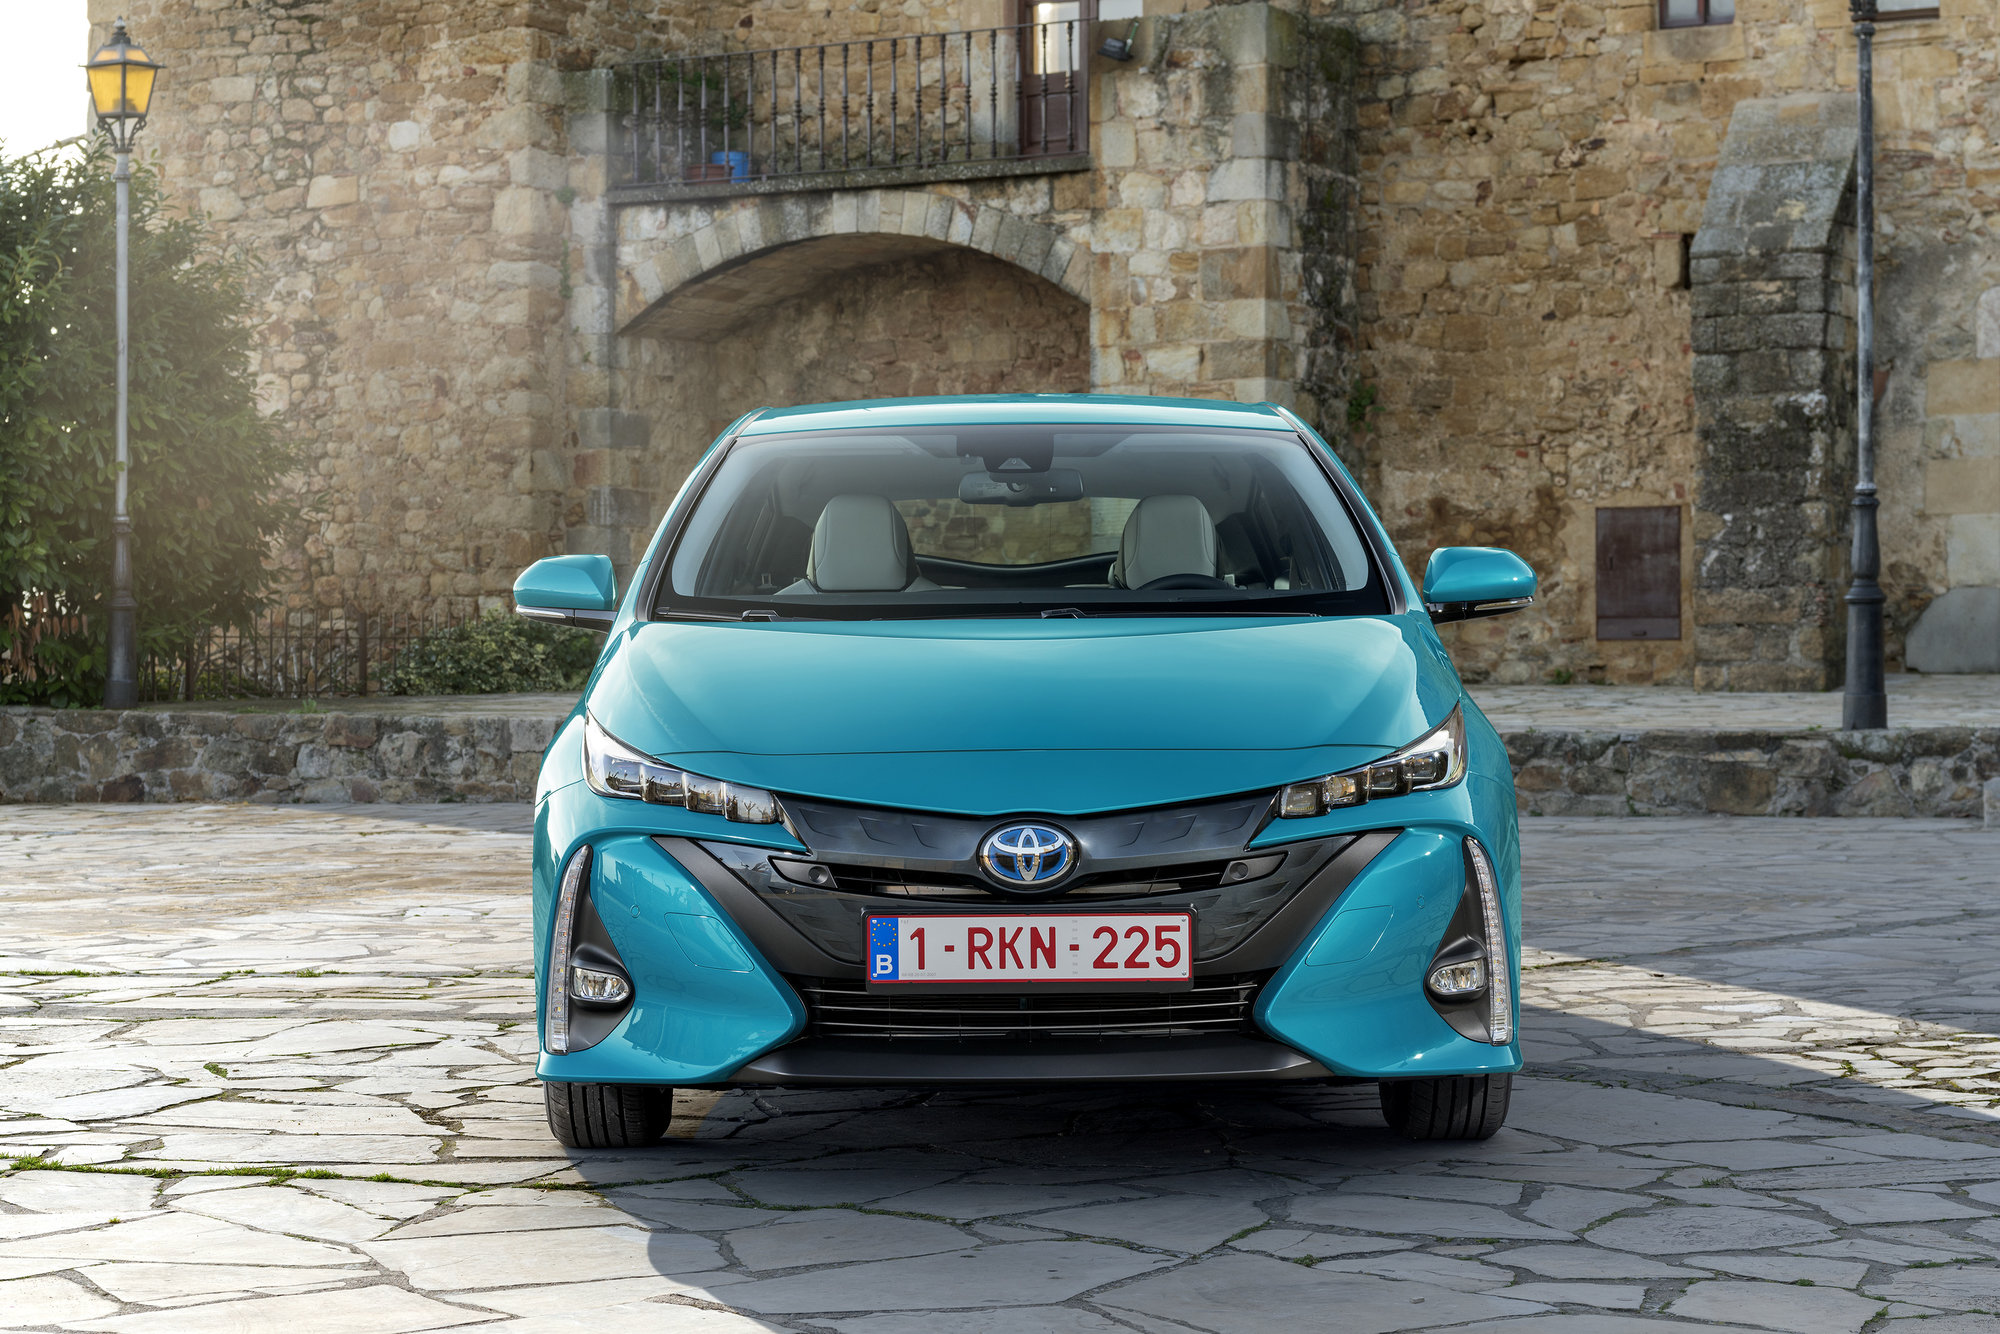 Toyota Prius se stala pro mnohé symbolem hybridních vozidel